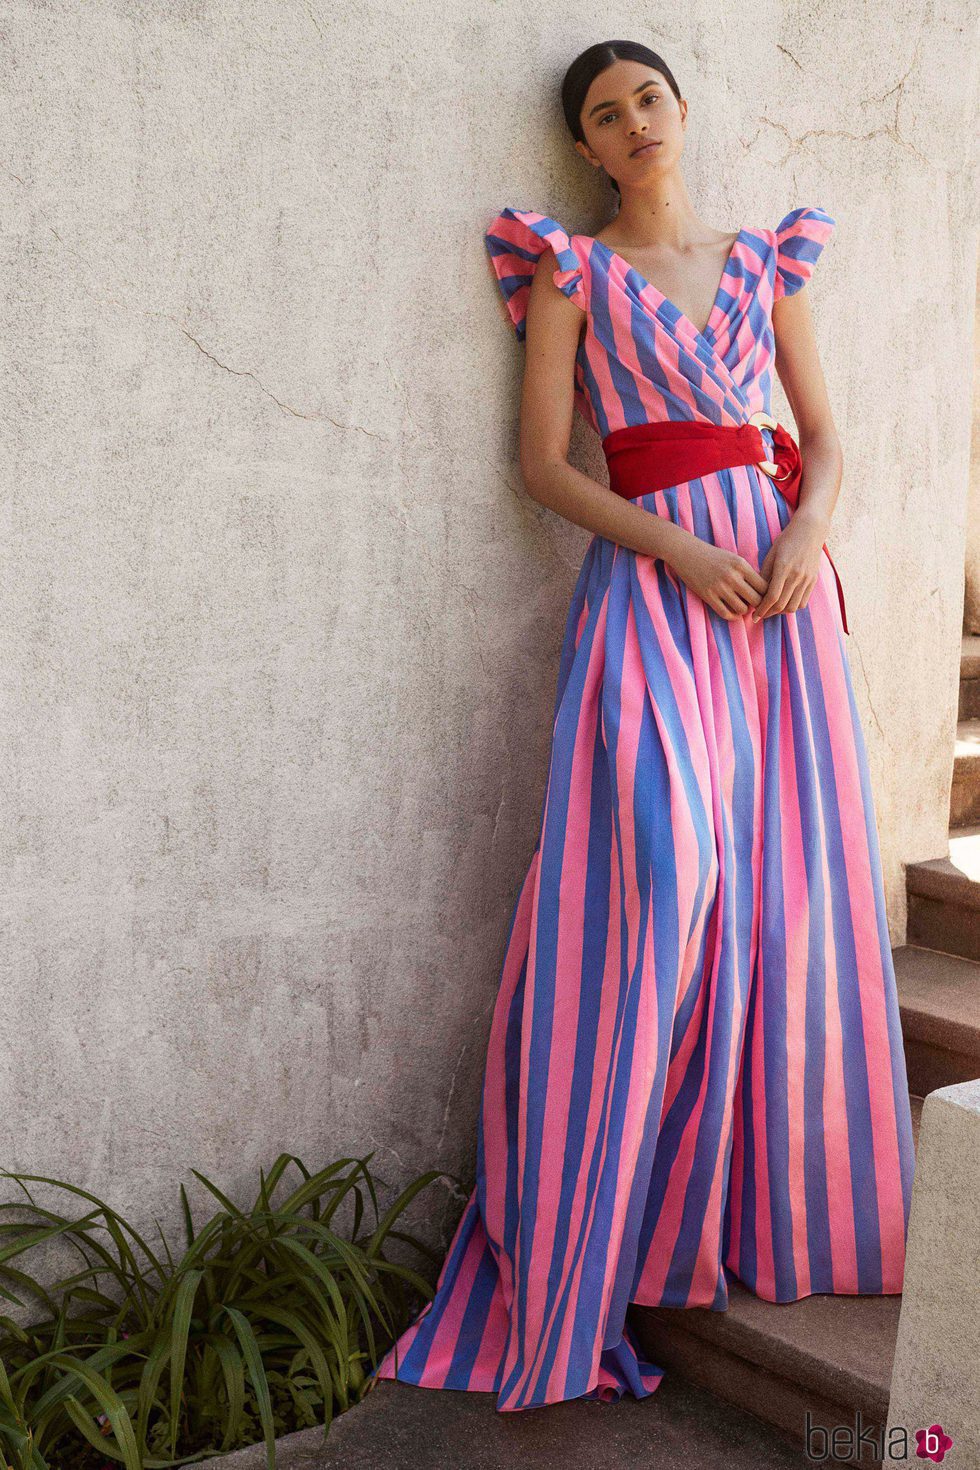 Vestido de rayas de la Colección Resort 2018 de Carolina Herrera